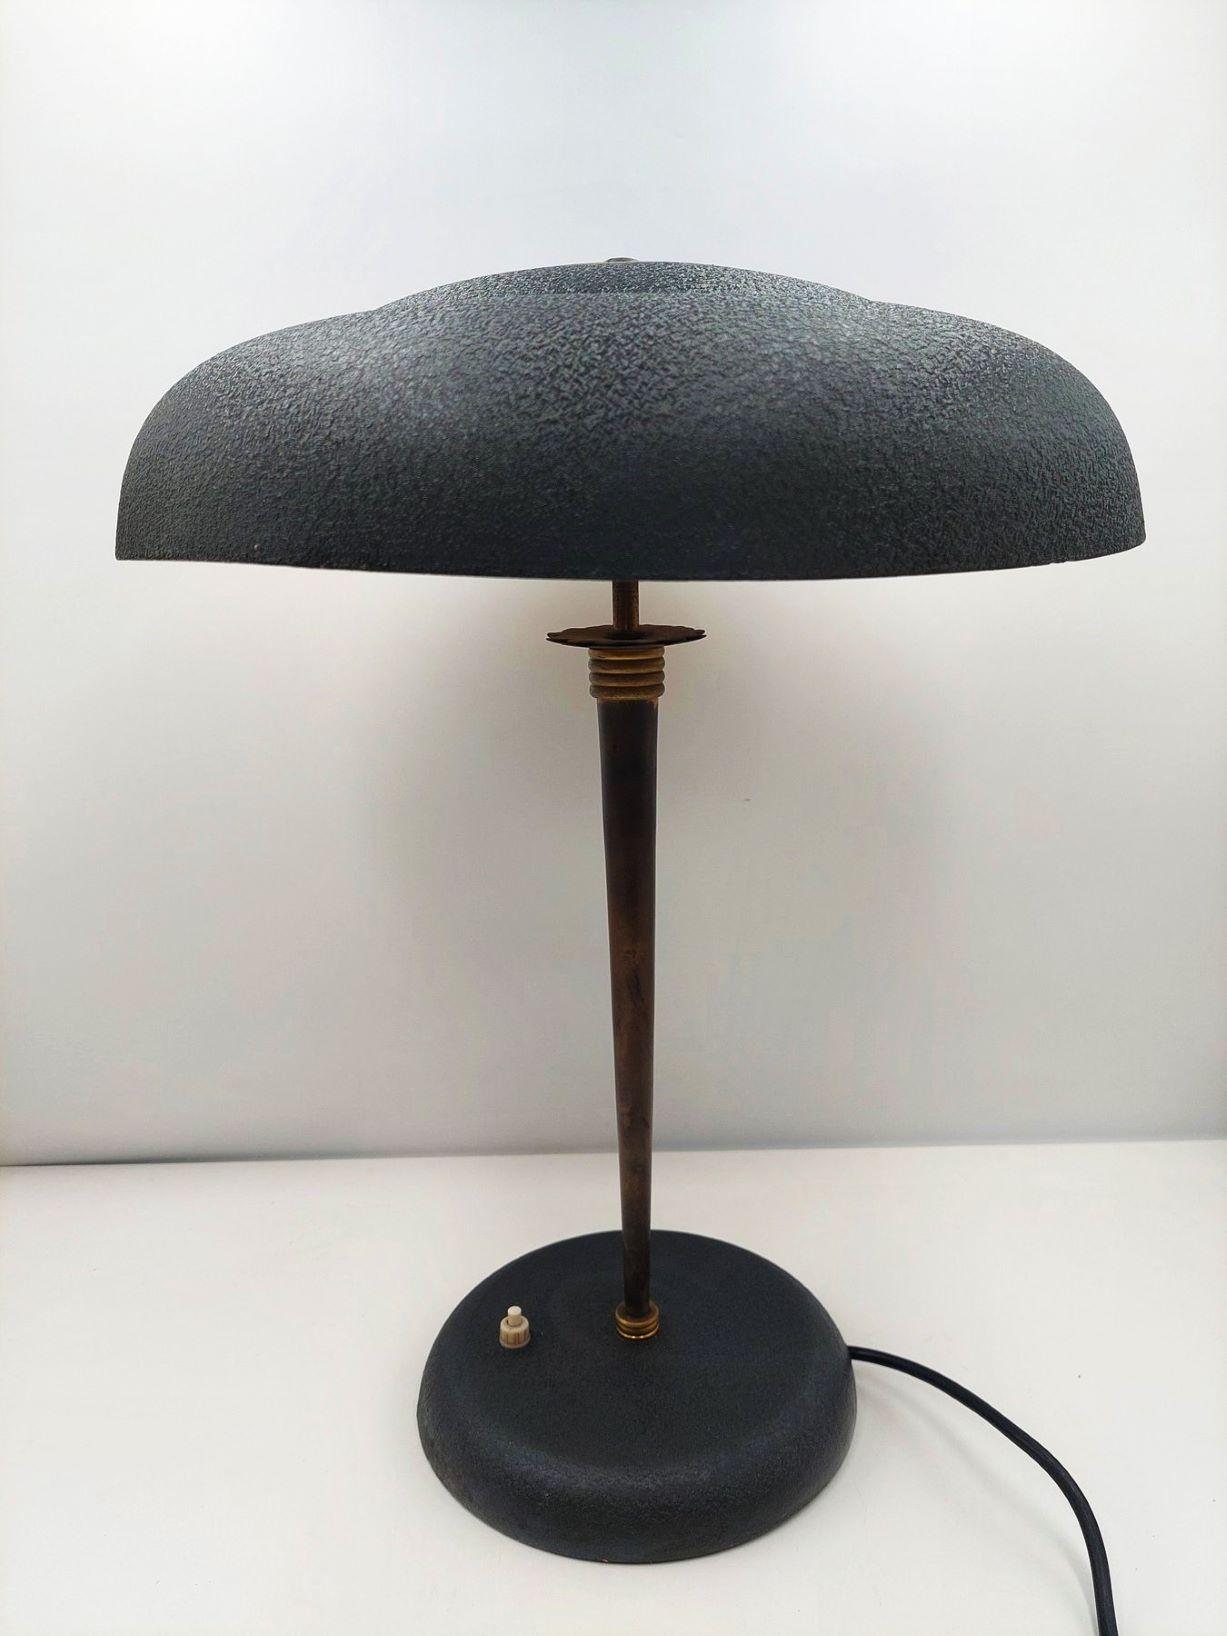 20th Century Midcentury Stilnovo Desk or Table Lamp Brass Black Enameled Metal, Iataly, 1950s For Sale